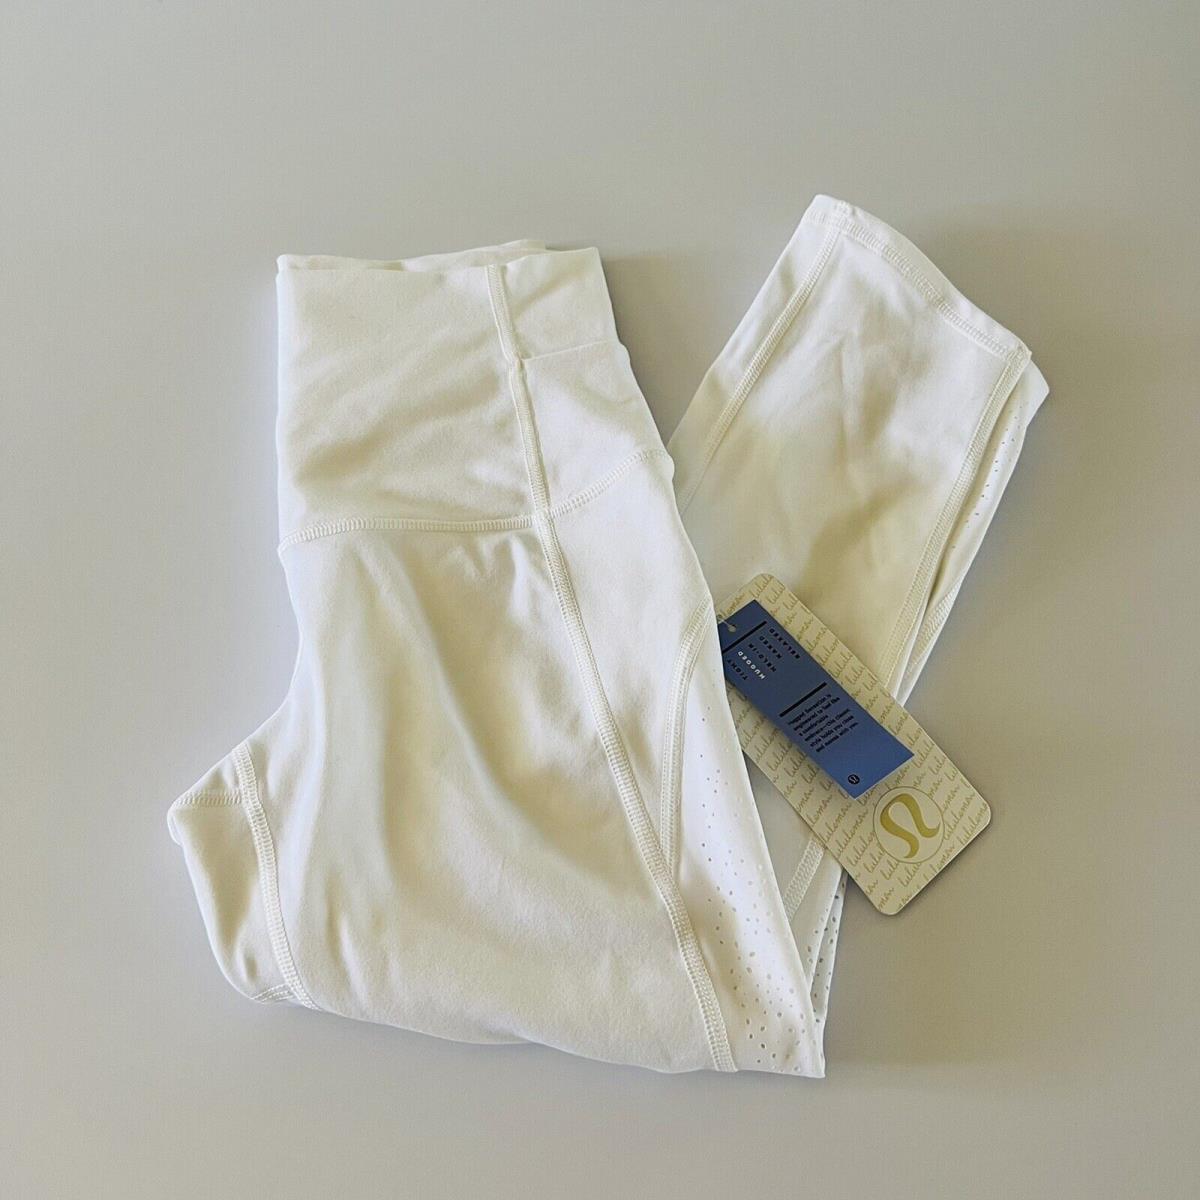 Lululemon clothing  - White 1